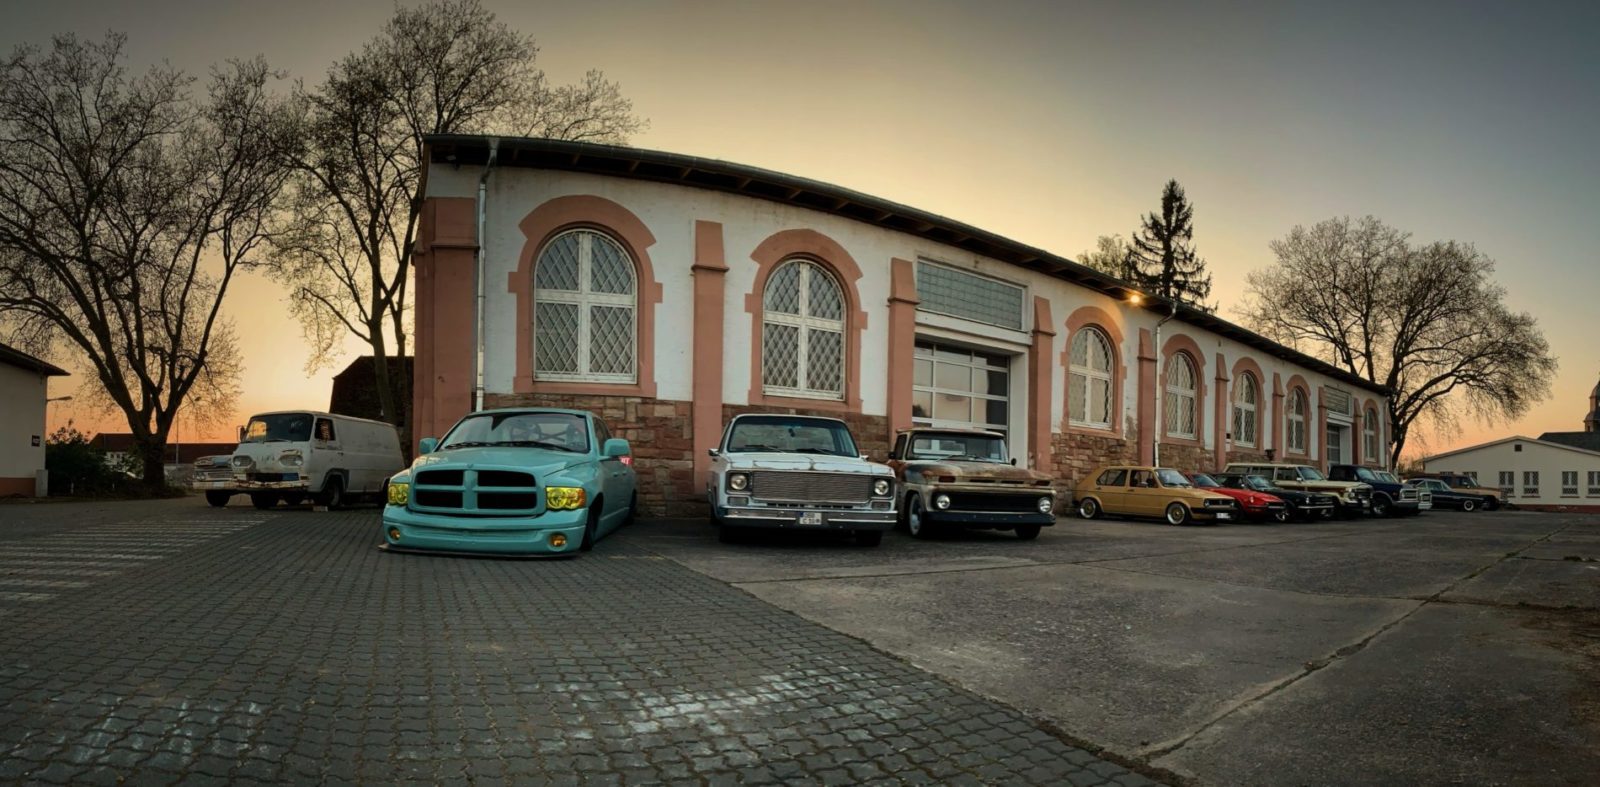 Classic Car Collection Babenhausen